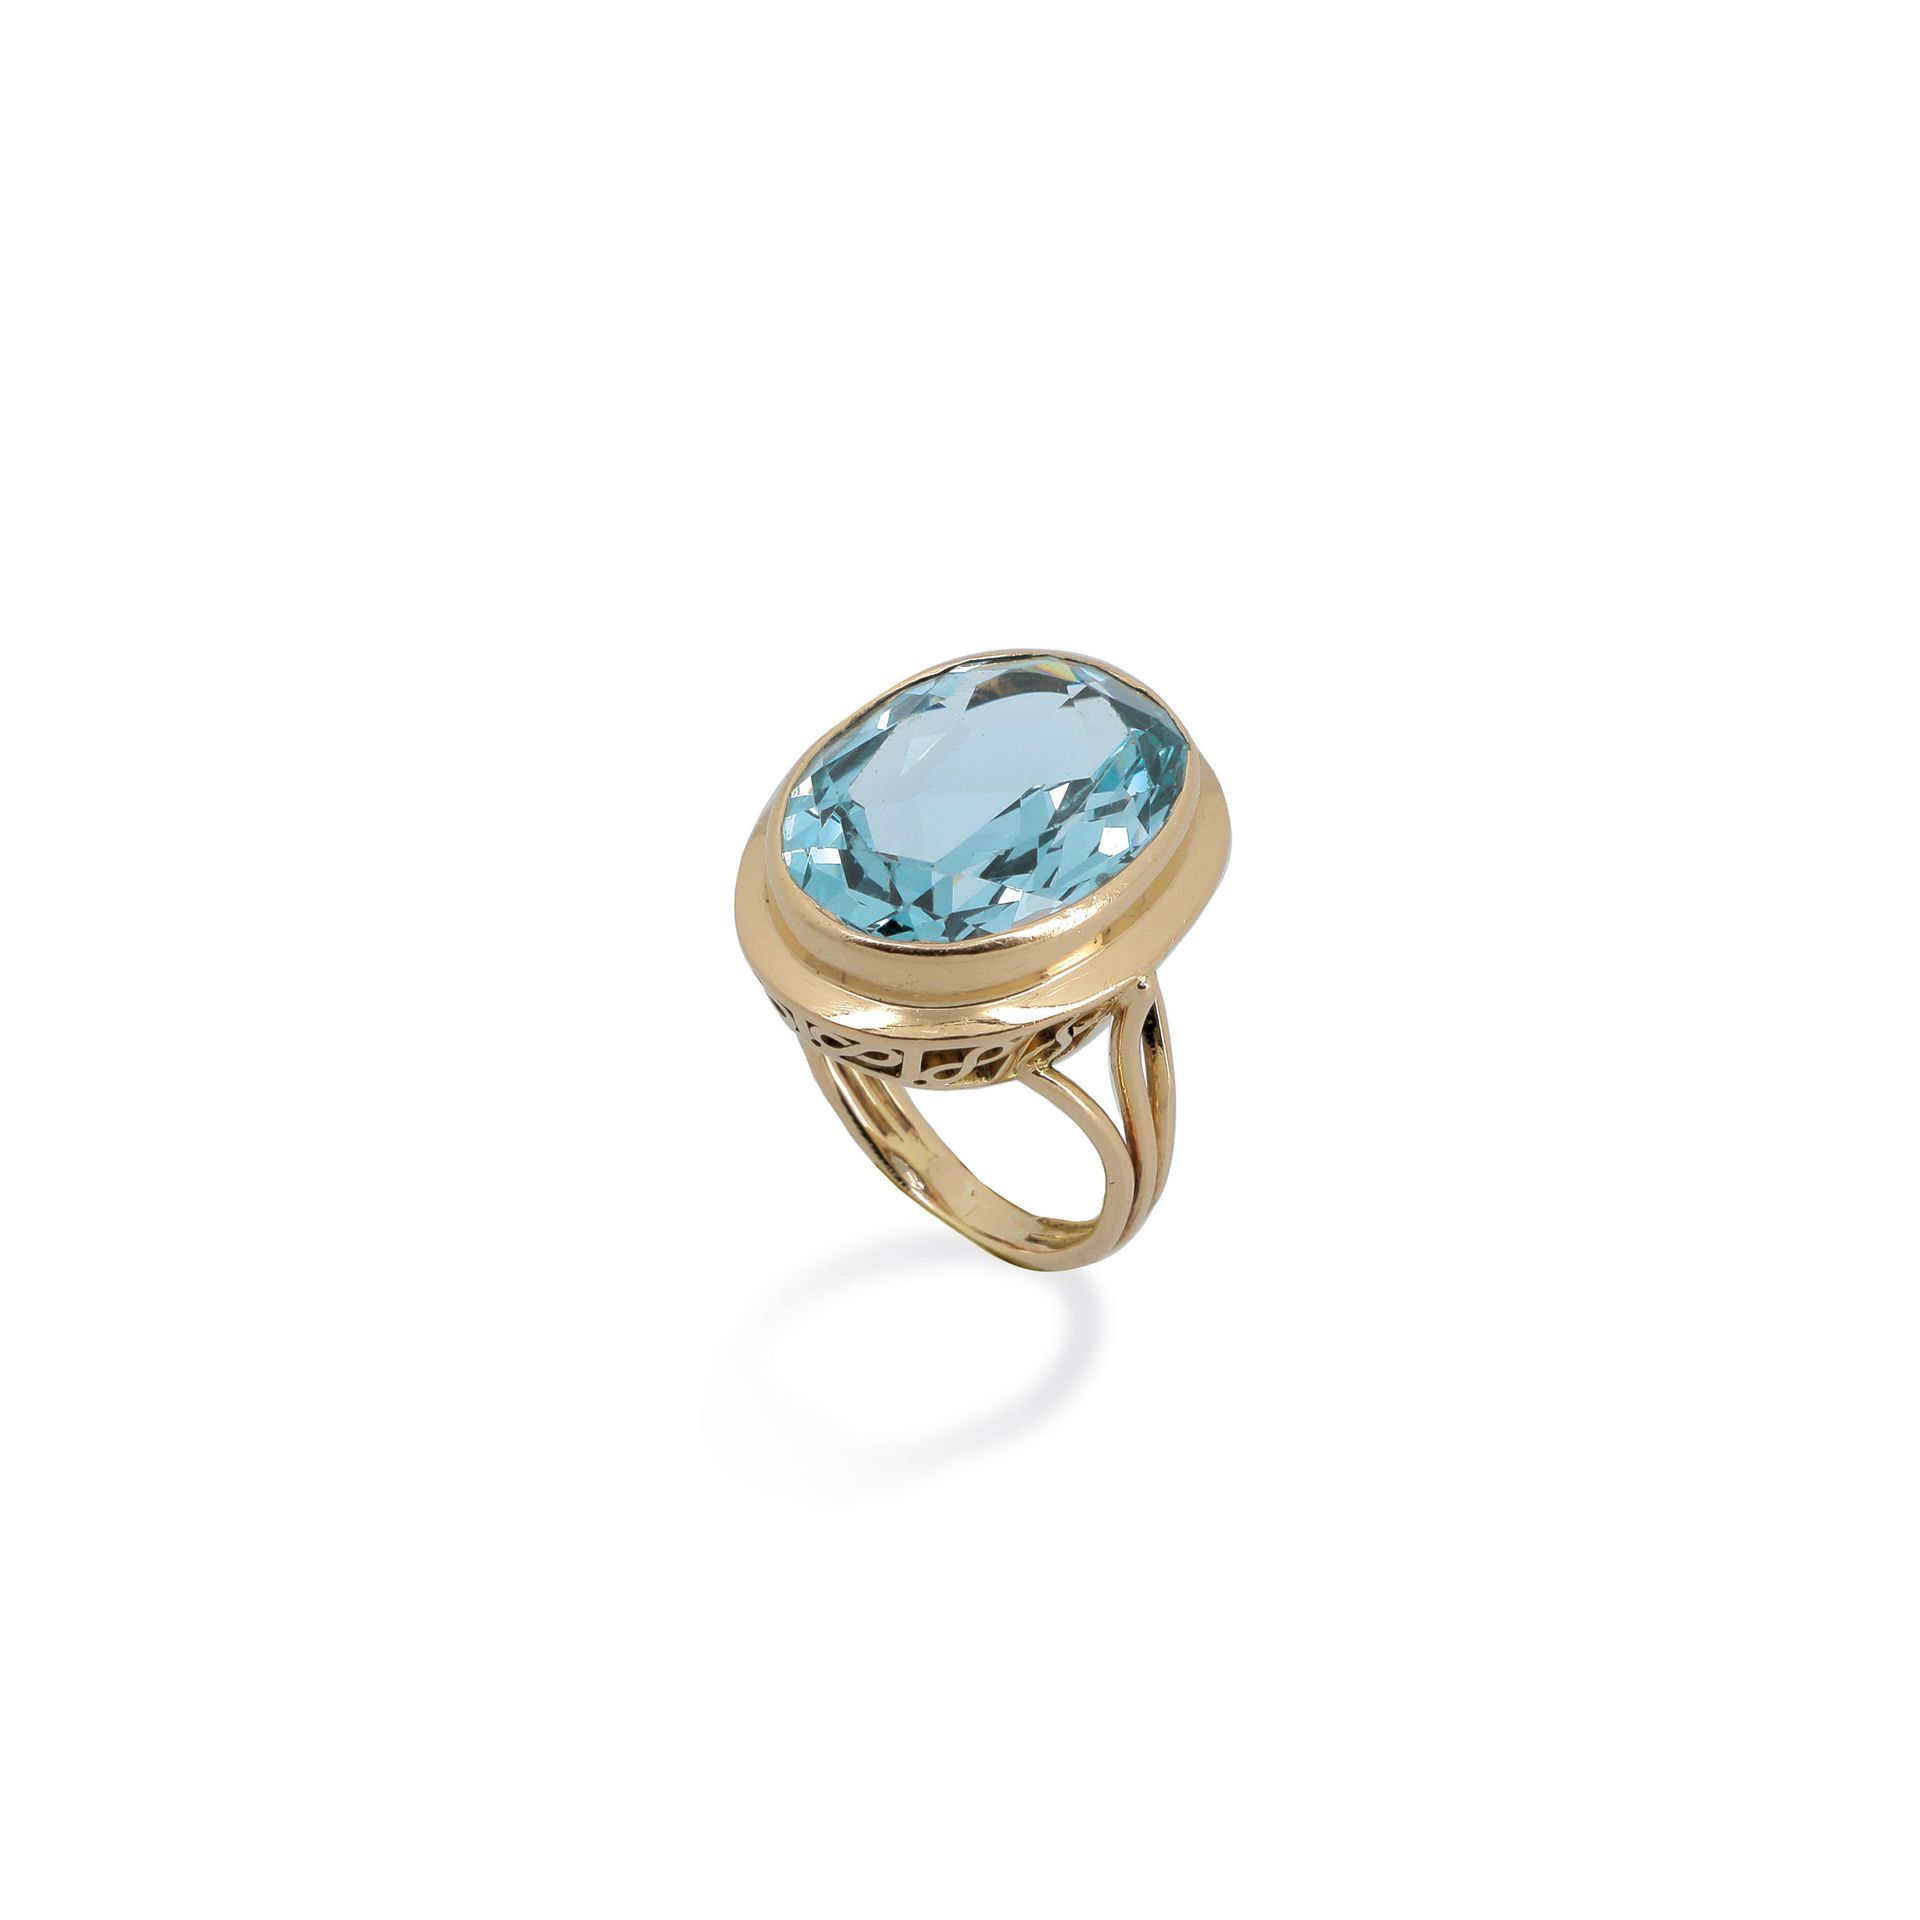 Null 戒指

镂空的黄金戒指上镶嵌着一颗大的椭圆形海蓝宝石。

一枚海蓝宝石和18K金戒指。



RC。

TDD：56，US：7 3/4（可换）。

重&hellip;